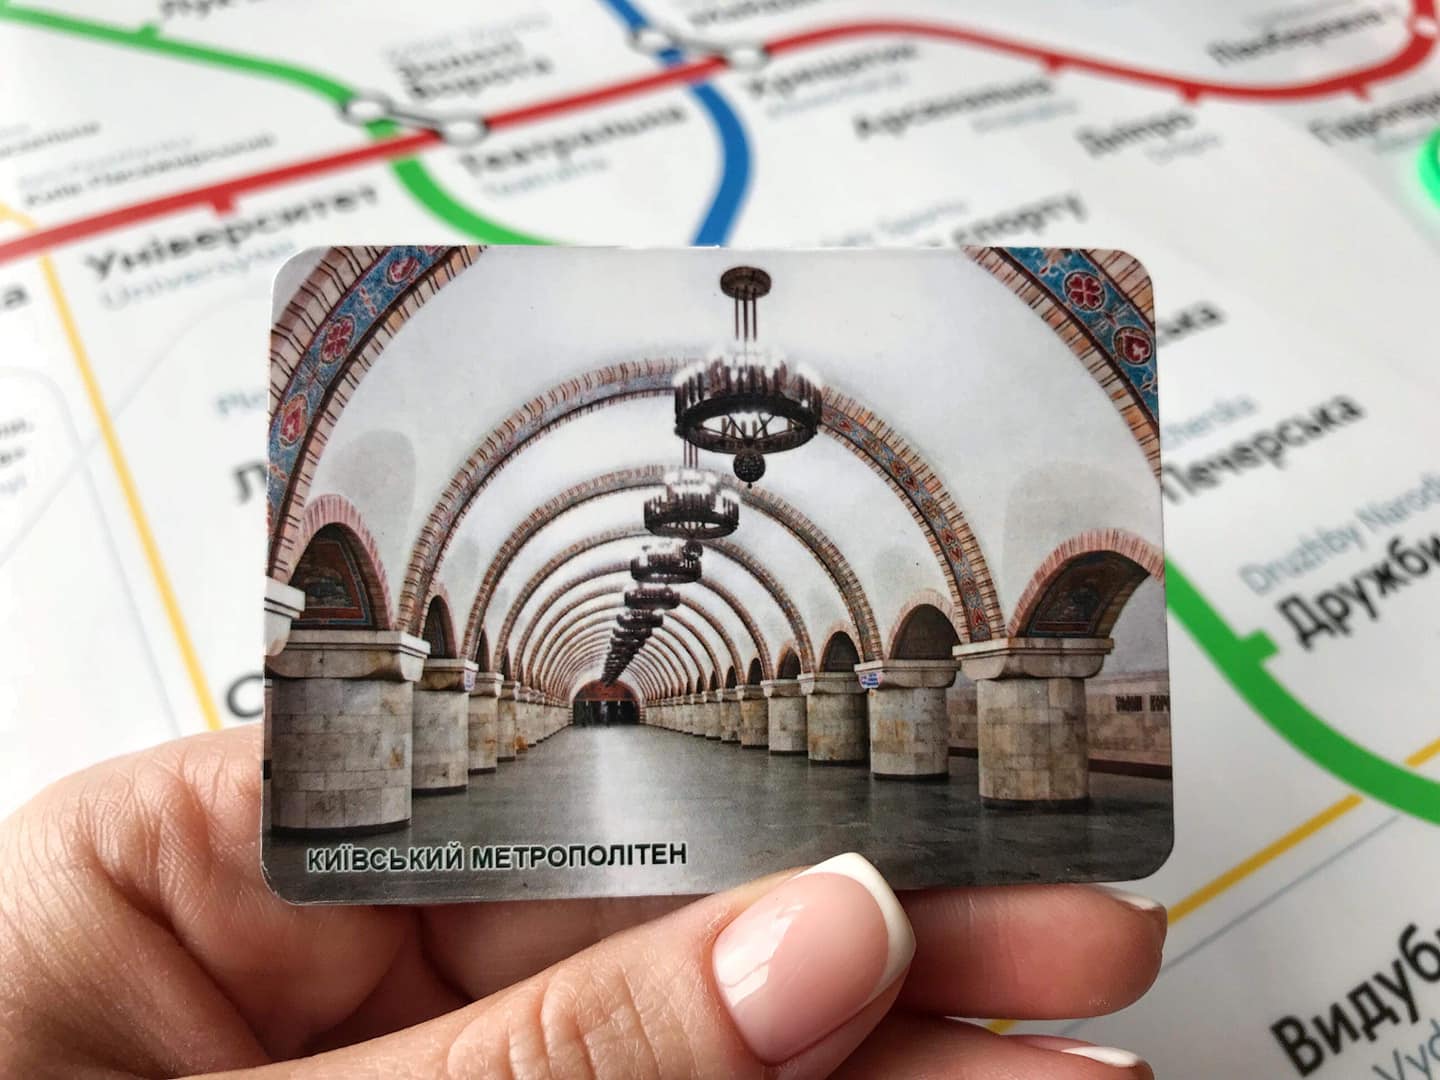 Киевский метрополитен решил заработать на сувенирах (фото)